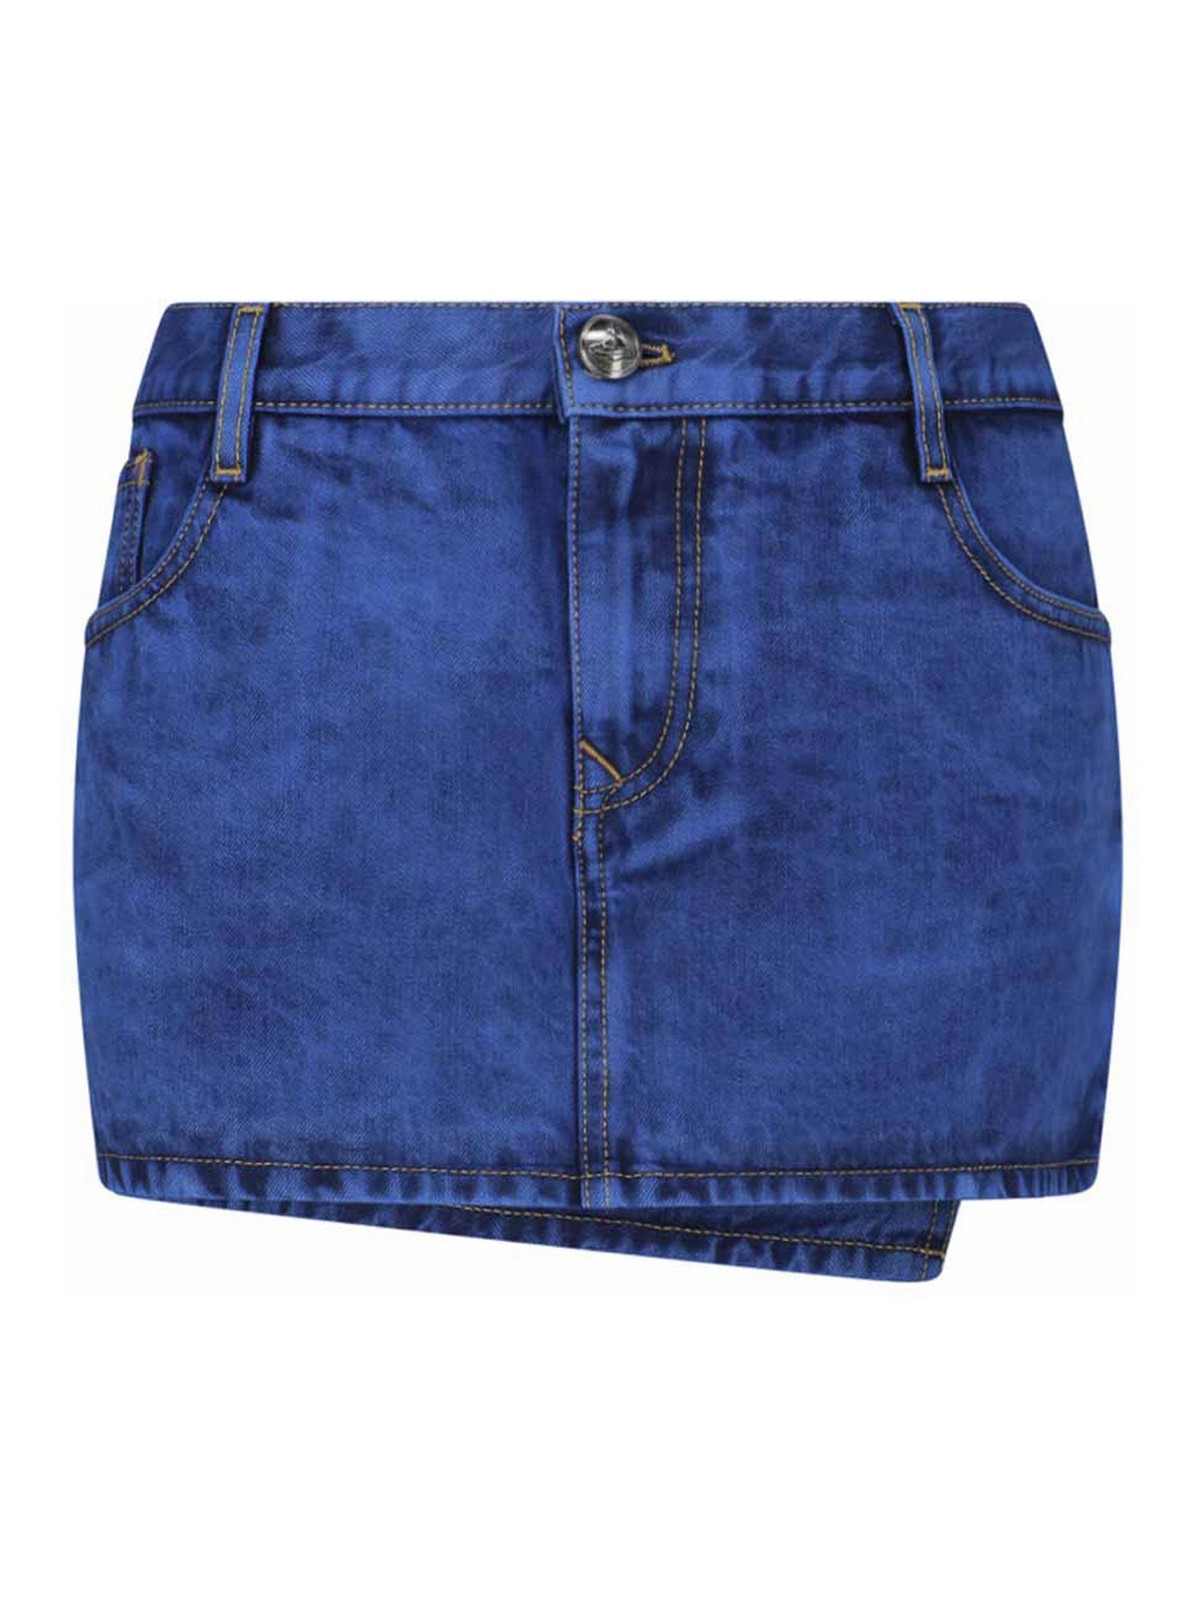 Vivienne Westwood Mini Skirt In Blue